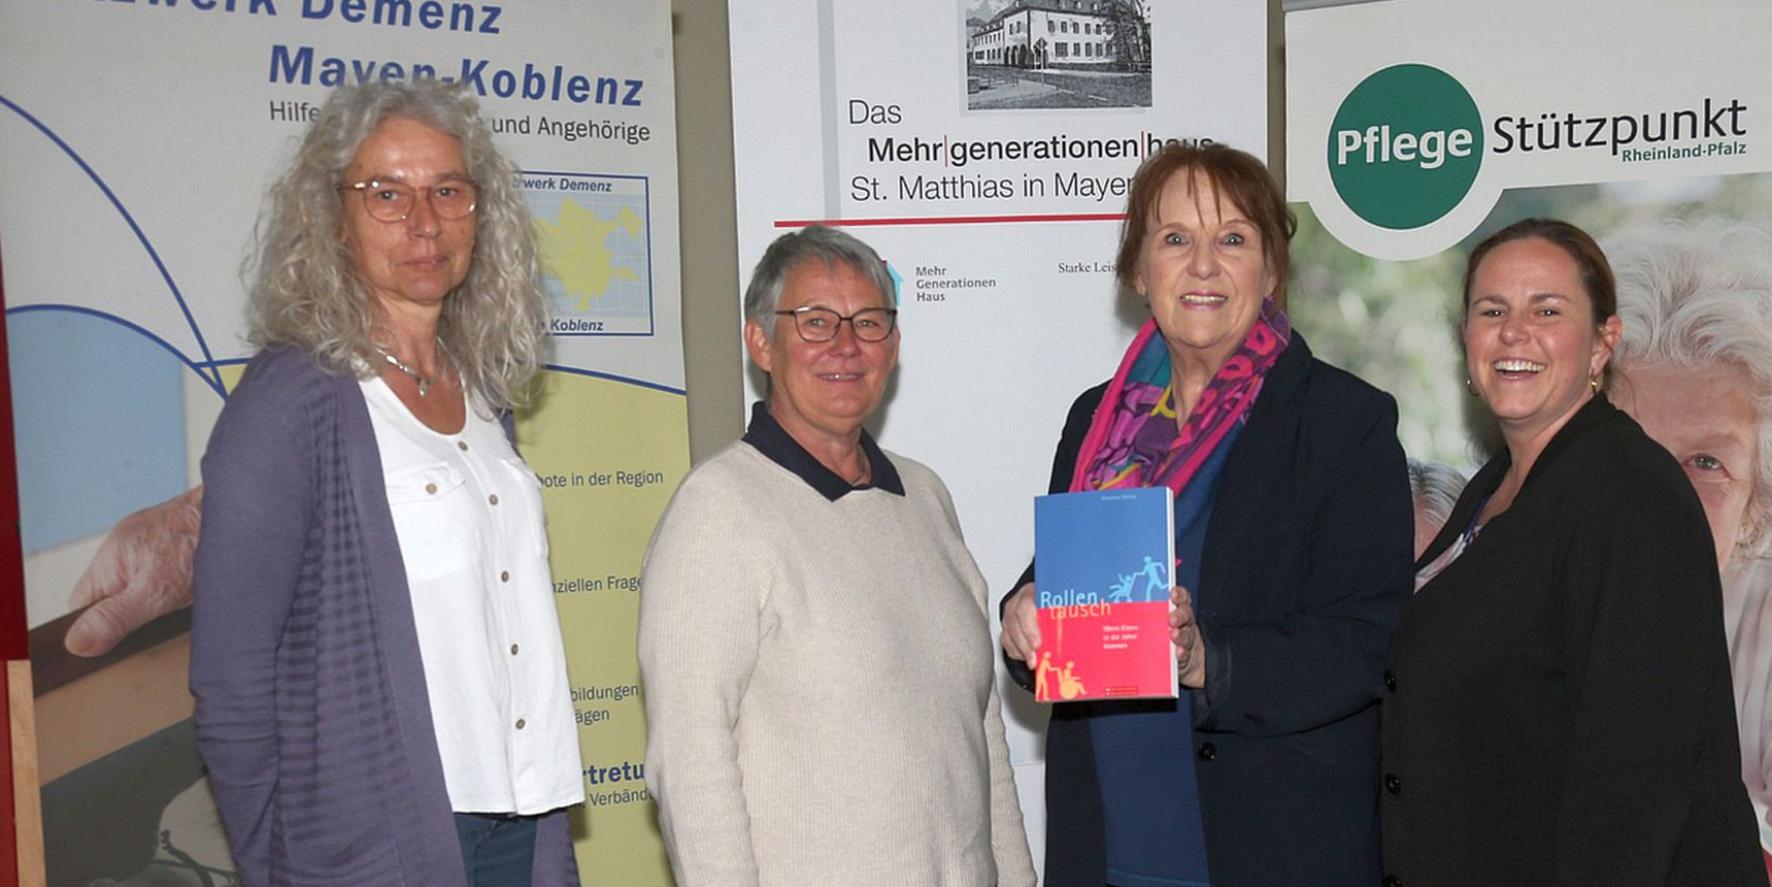 Dorothee Waldorf (Pflegestützpunkt Mayen-Vordereifel) und Martina Pickhardt (Pflegestützpunkt Maifeld) freuten sich mit Dorothee Döring und MGH-Koordinatorin Susanne Breitbach (von links) über die gute Resonanz.